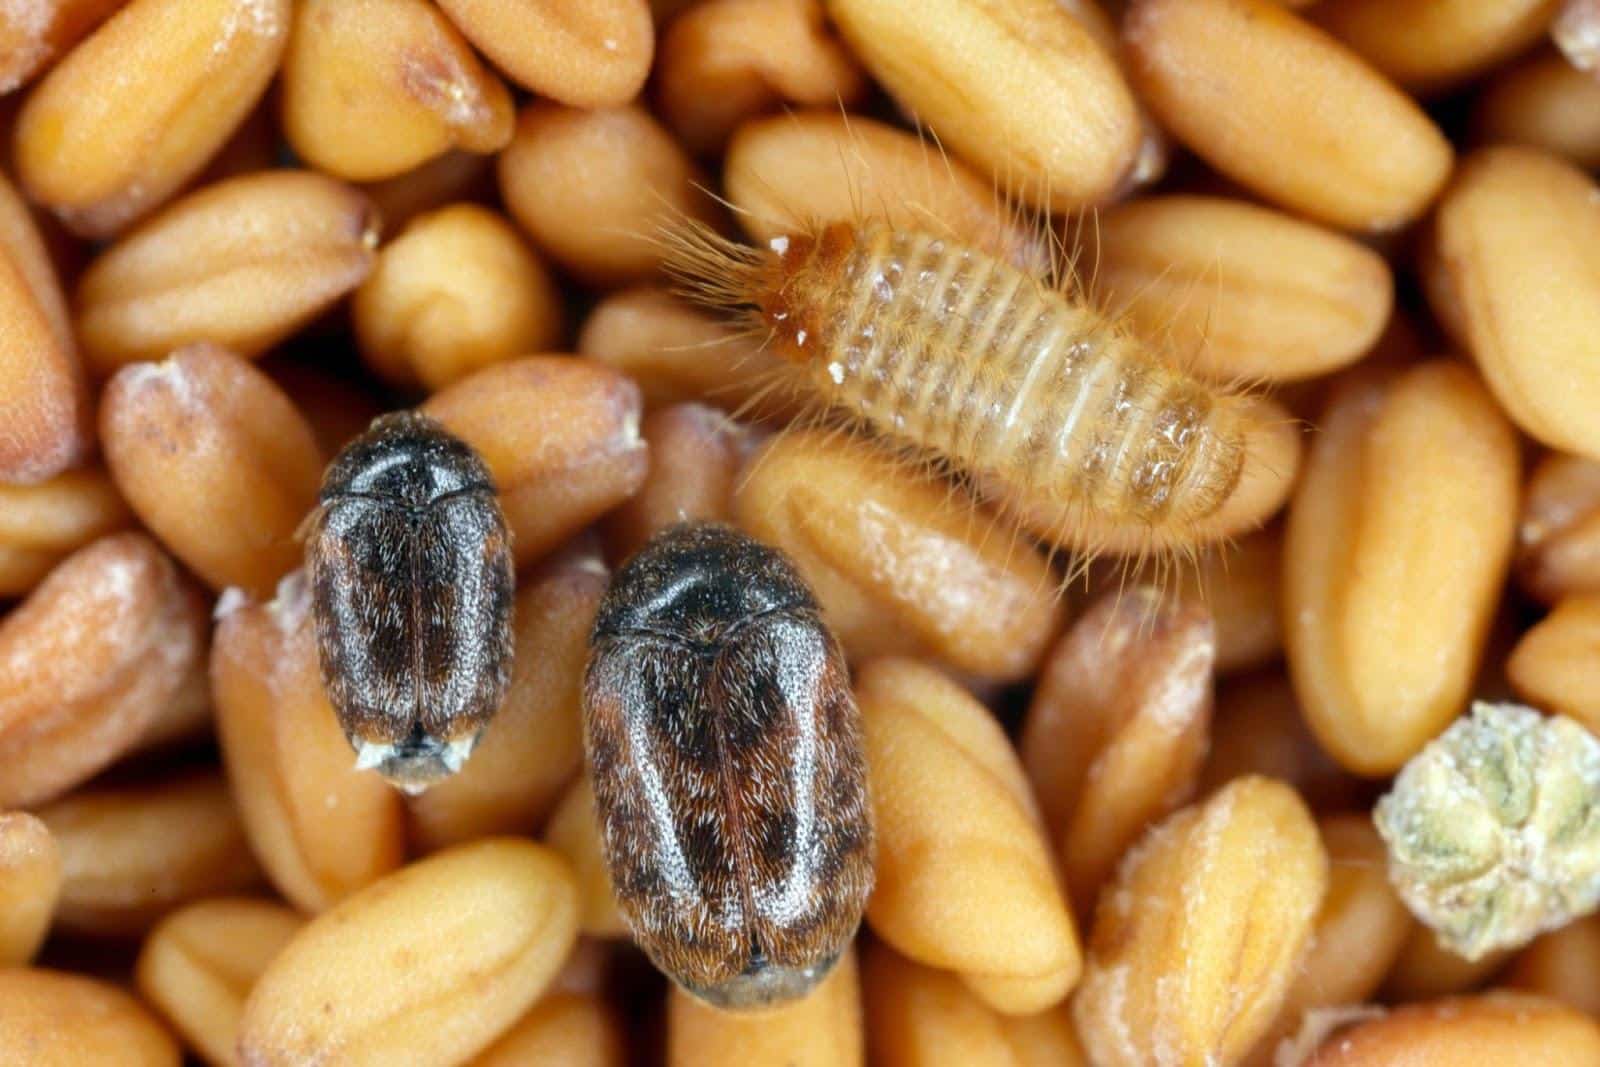 Beetles and larvae on seeds.